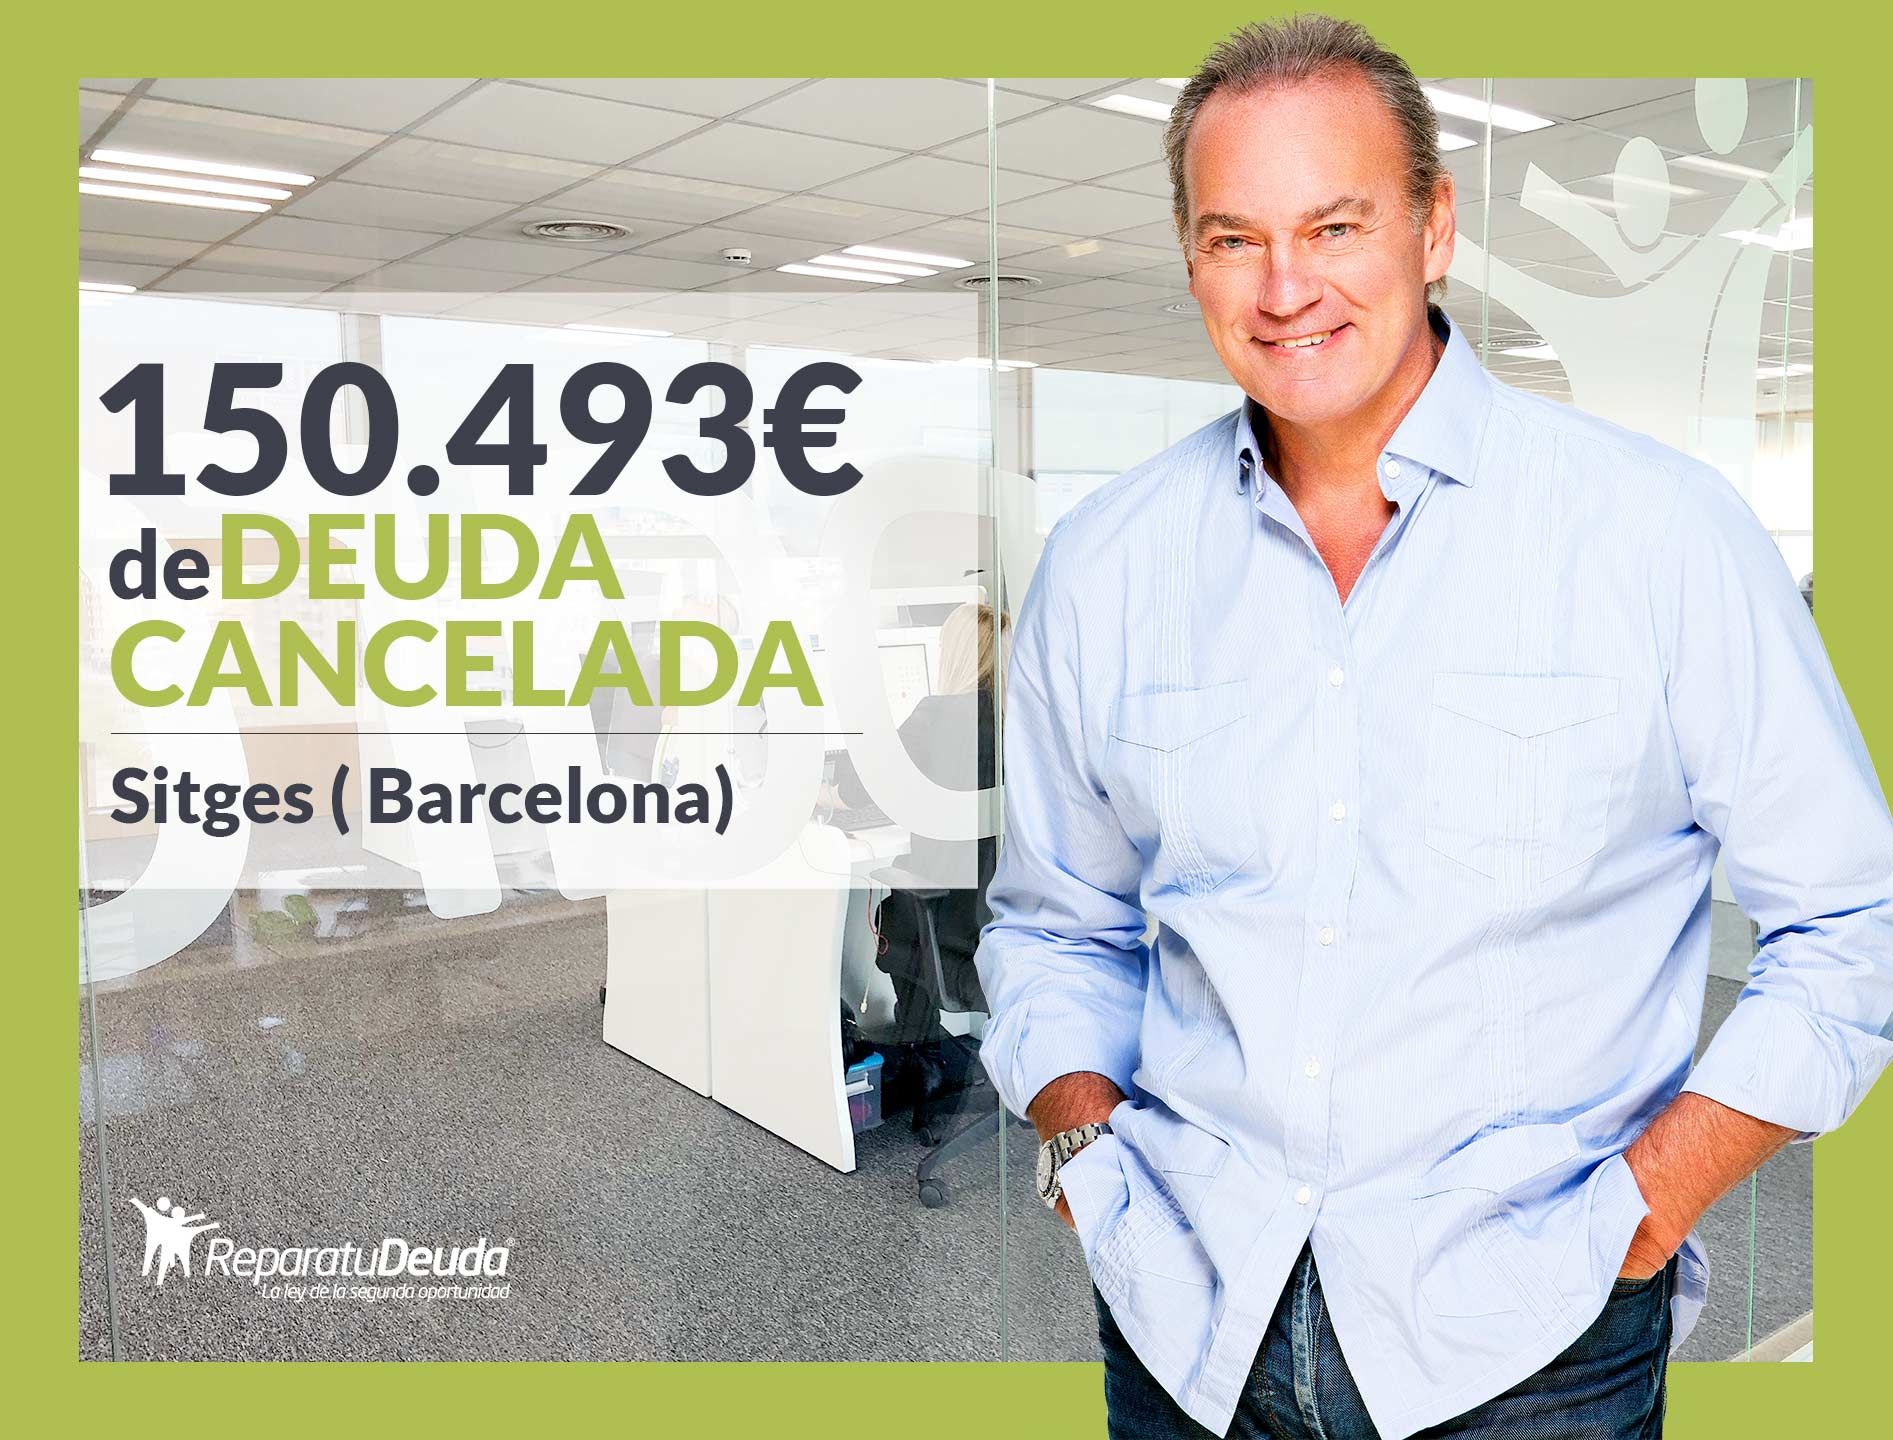 Repara tu Deuda Abogados cancela 150.493? en Sitges (Barcelona) con la Ley de Segunda Oportunidad